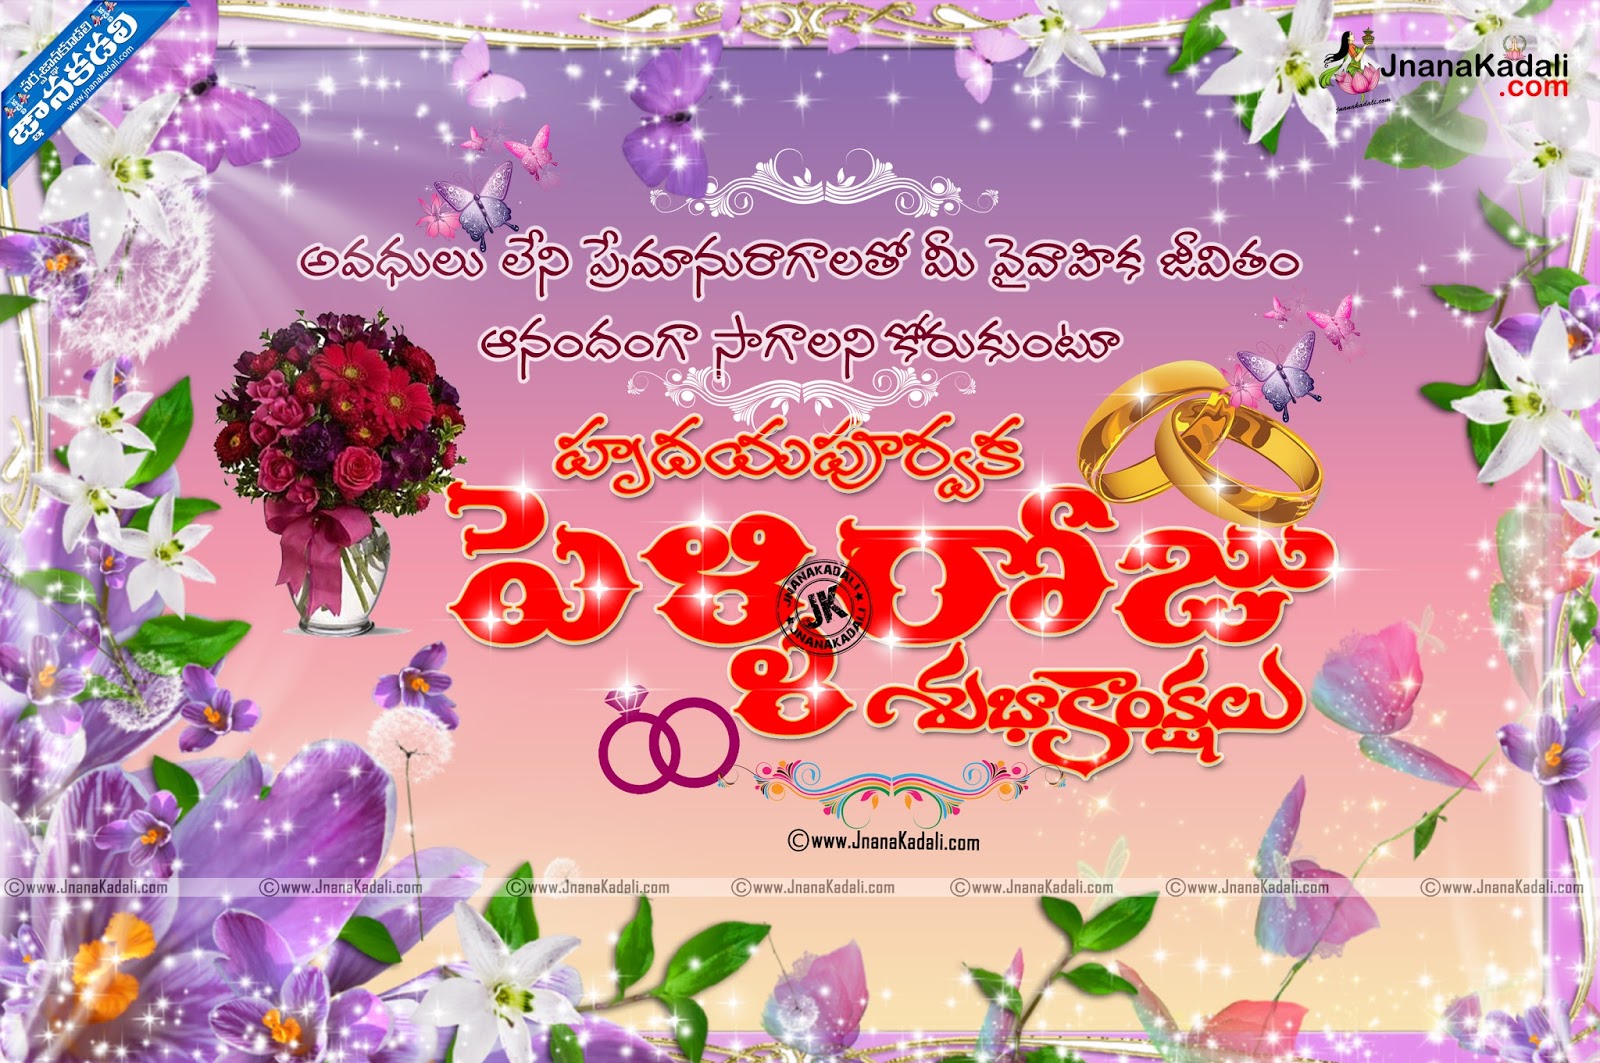 Telugu Marriage Day Wishes Pelliroju Subhakankshalu Jnana